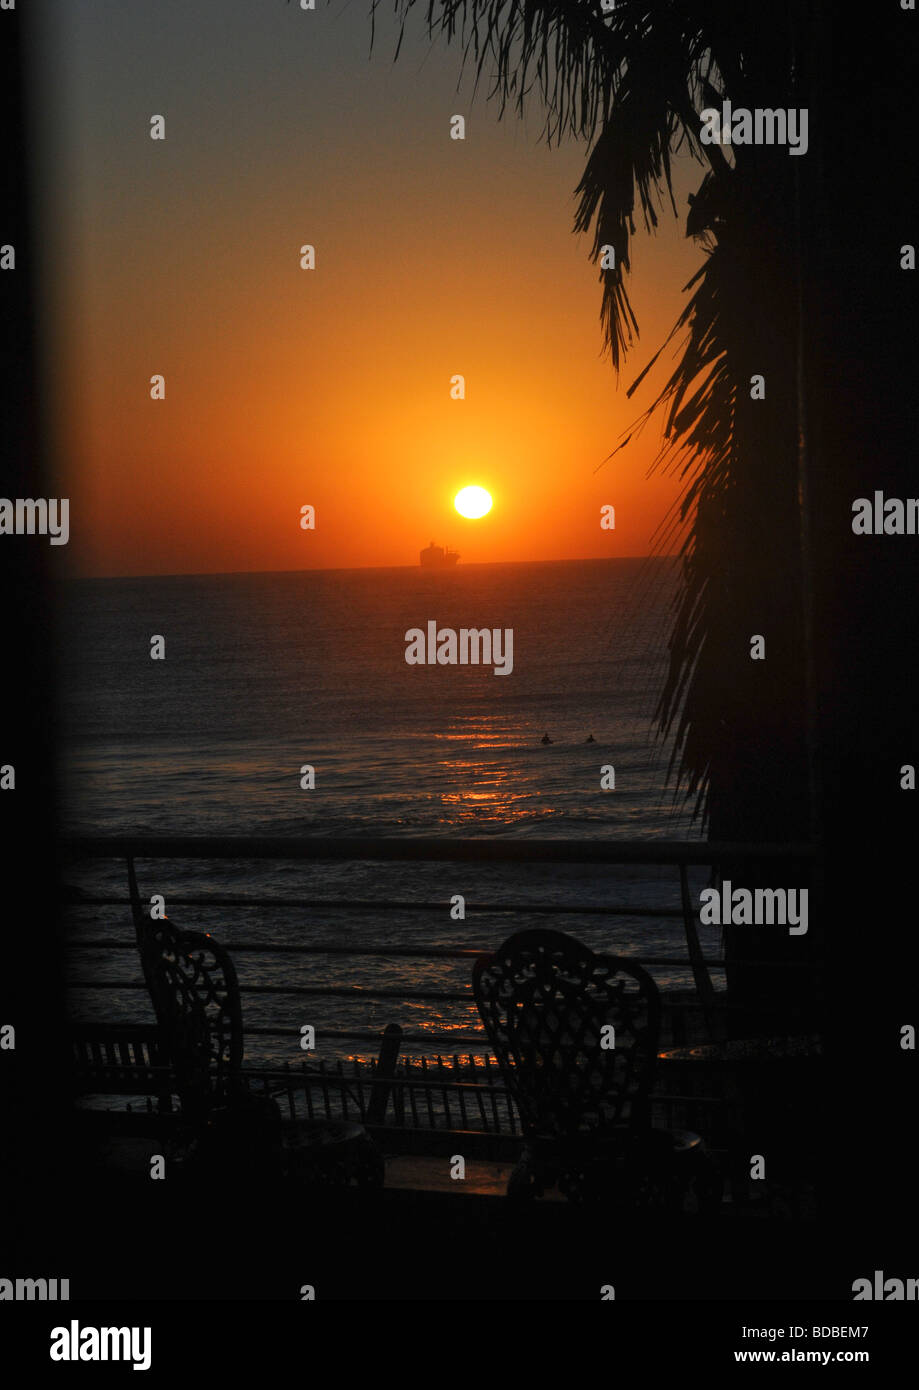 Mattina presto all'alba sopra l'orizzonte oltre il mare con la silhouette di una nave, la gente di nuoto, veranda, e una parte di un albero di palma. Foto Stock